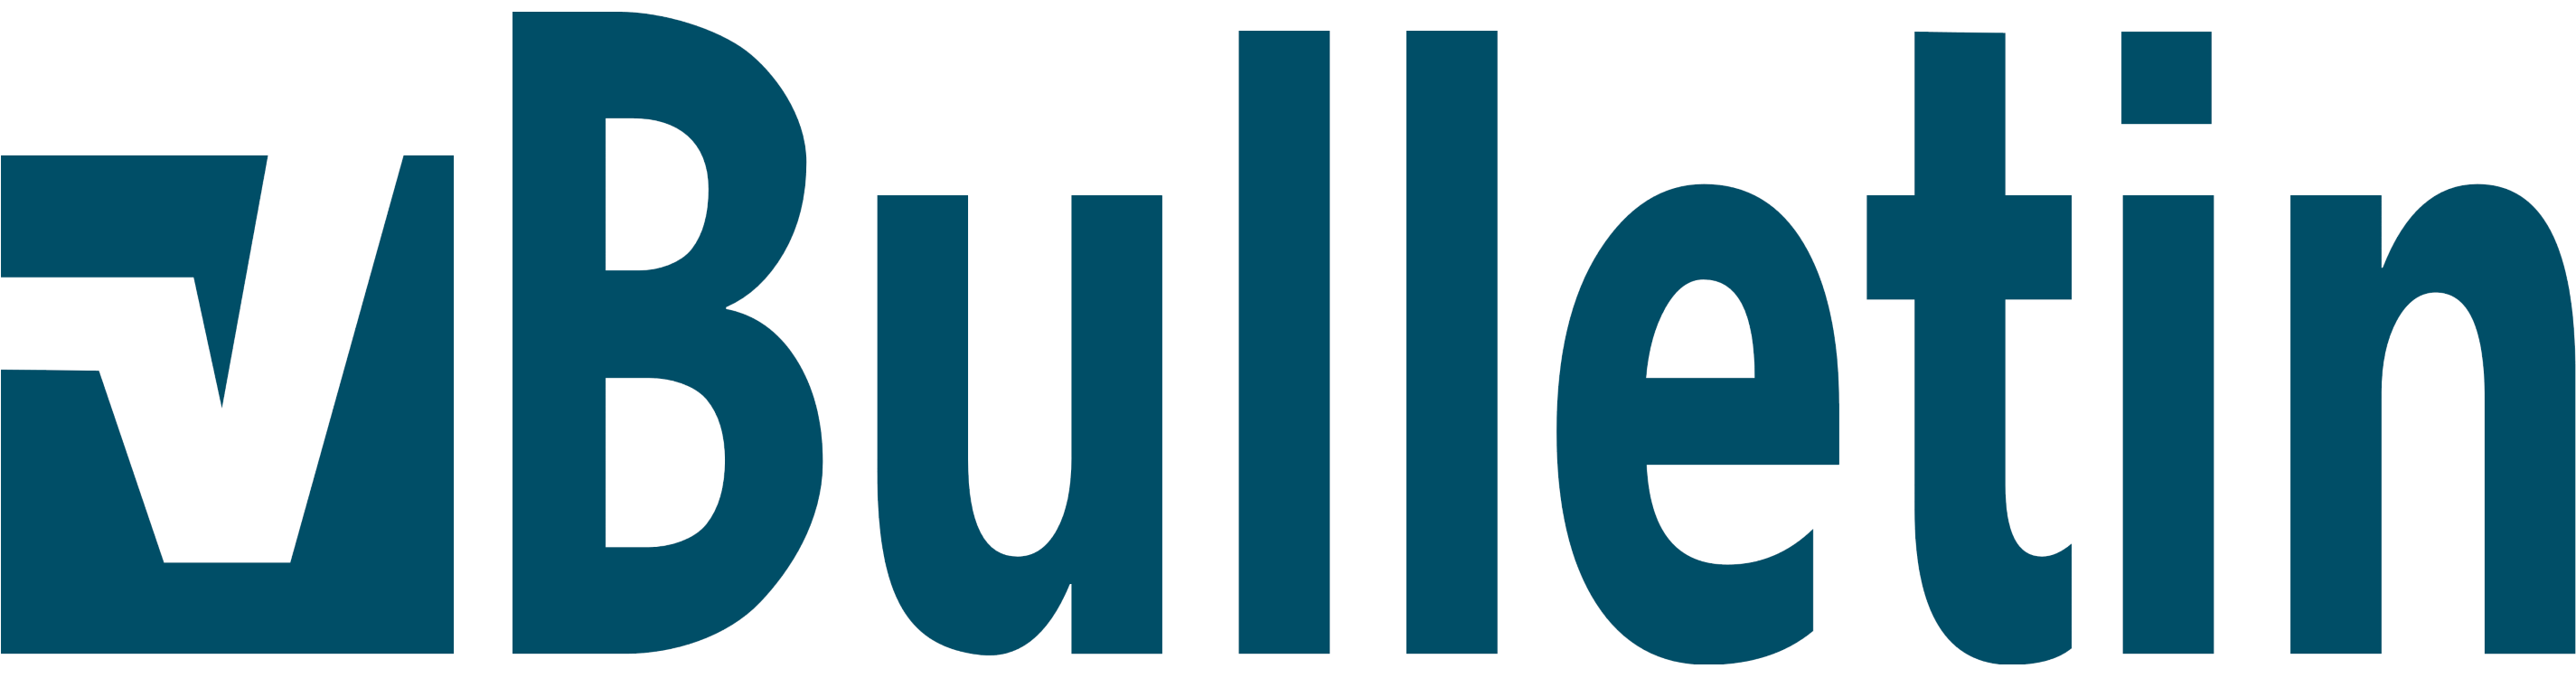 vBulletin logo, logotype